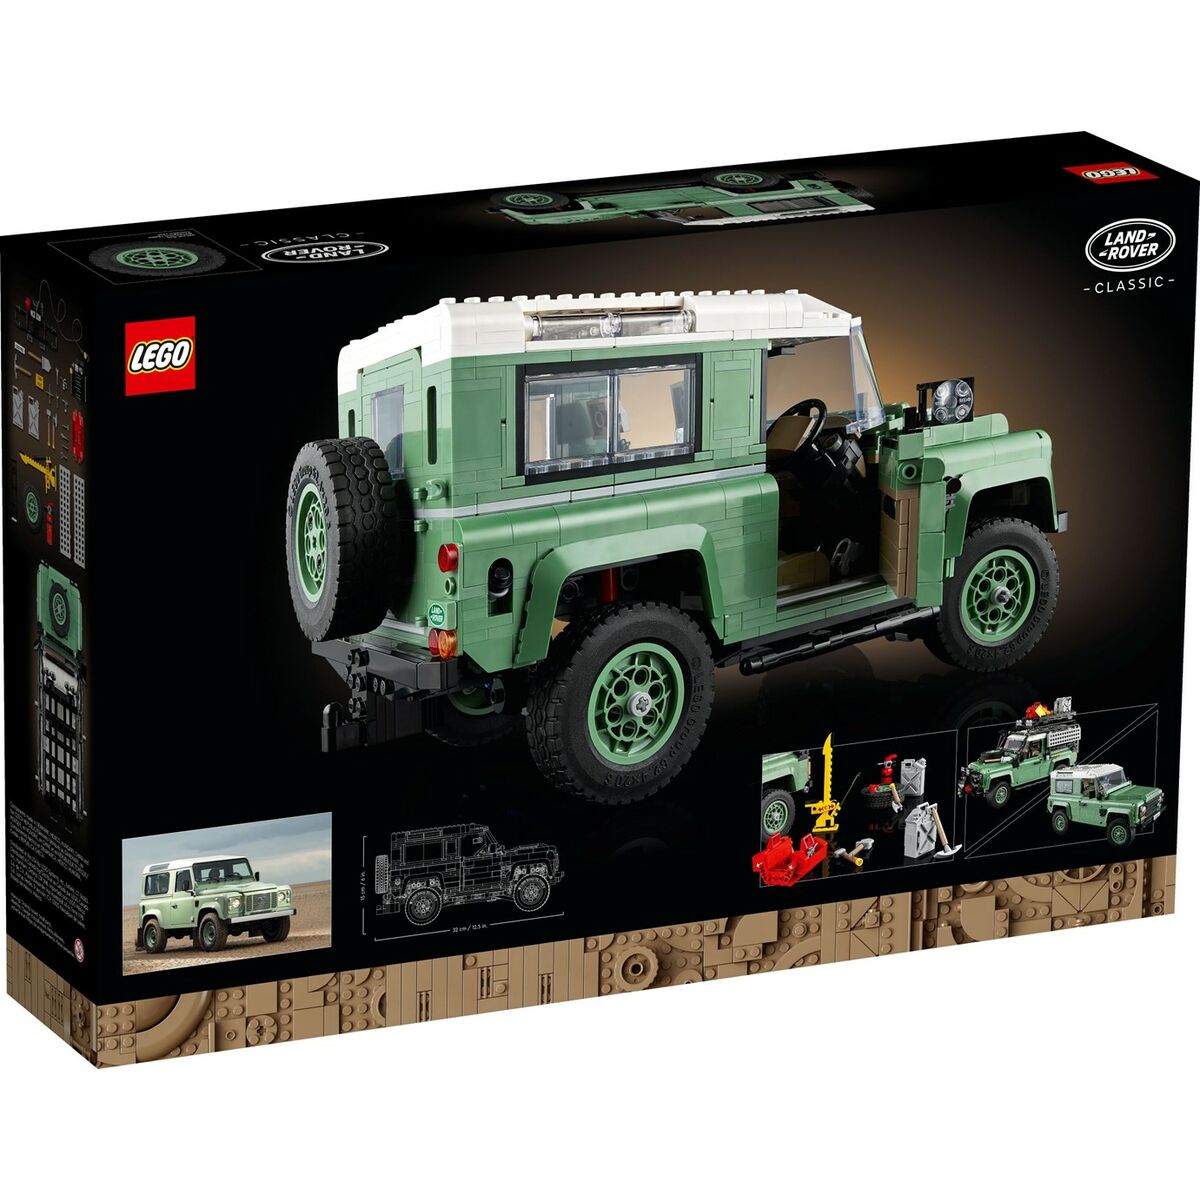 Bouwspel Lego Classic Defender 90 Land Rover 10317 2336 Onderdelen Zwart